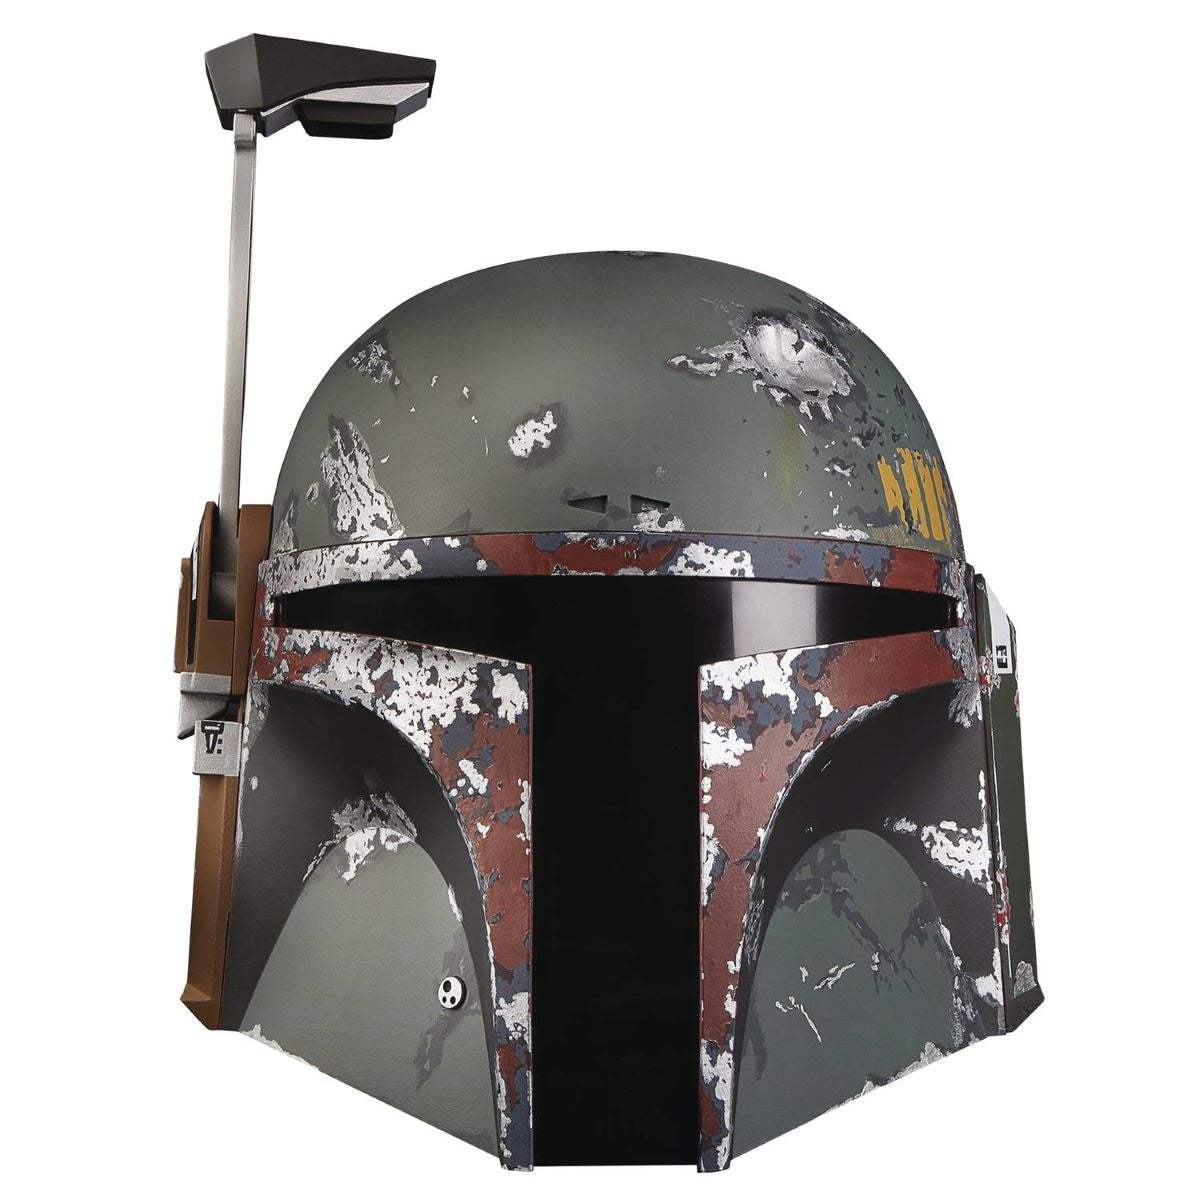 Star Wars Black Series Boba Fett Electronic Helmet